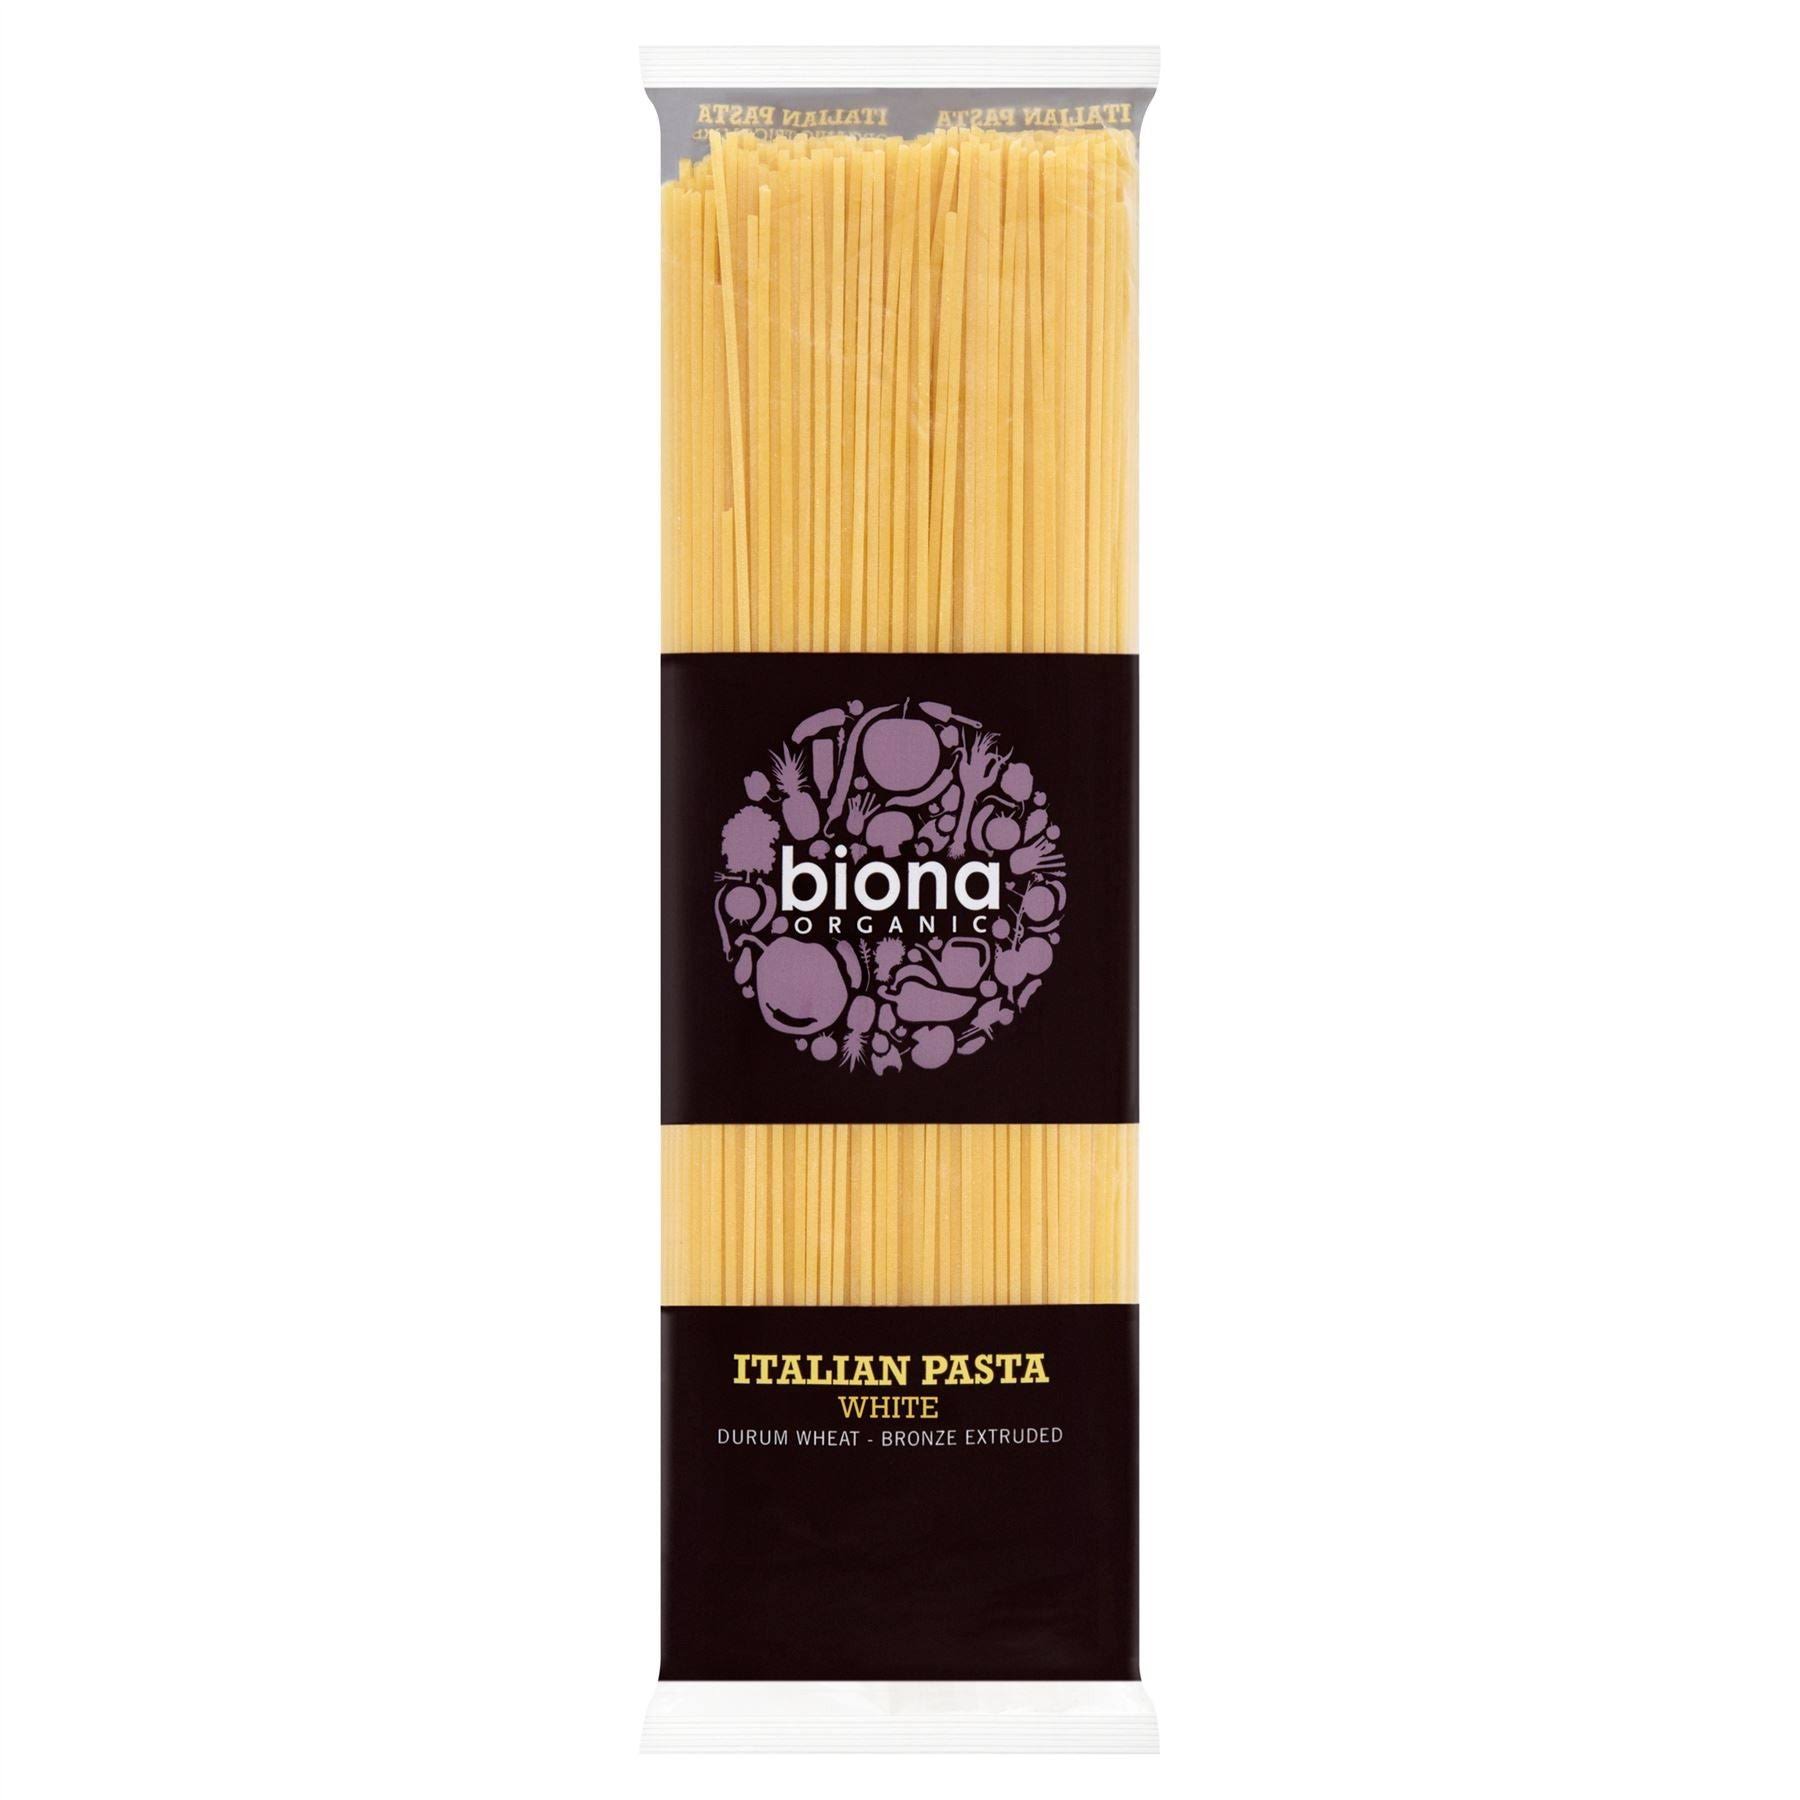 Biona Organic Italian Pasta - White, 500g